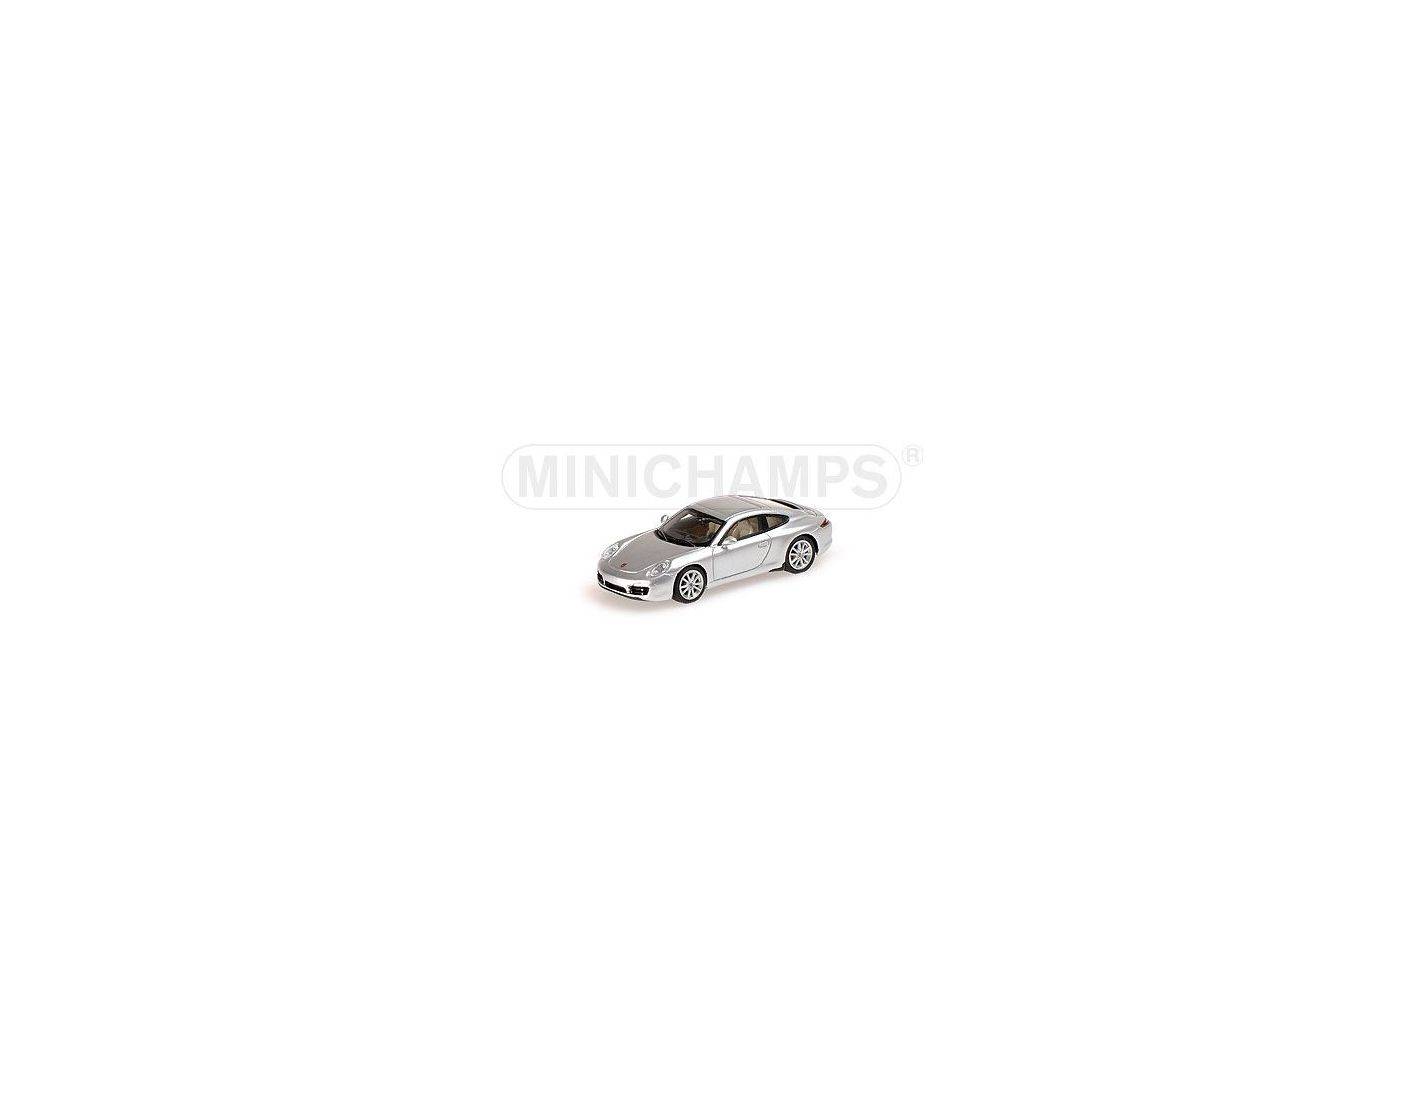 Minichamps 1:87 877060222 silber-metallic 991 // 2011 Porsche 911 Carrera S